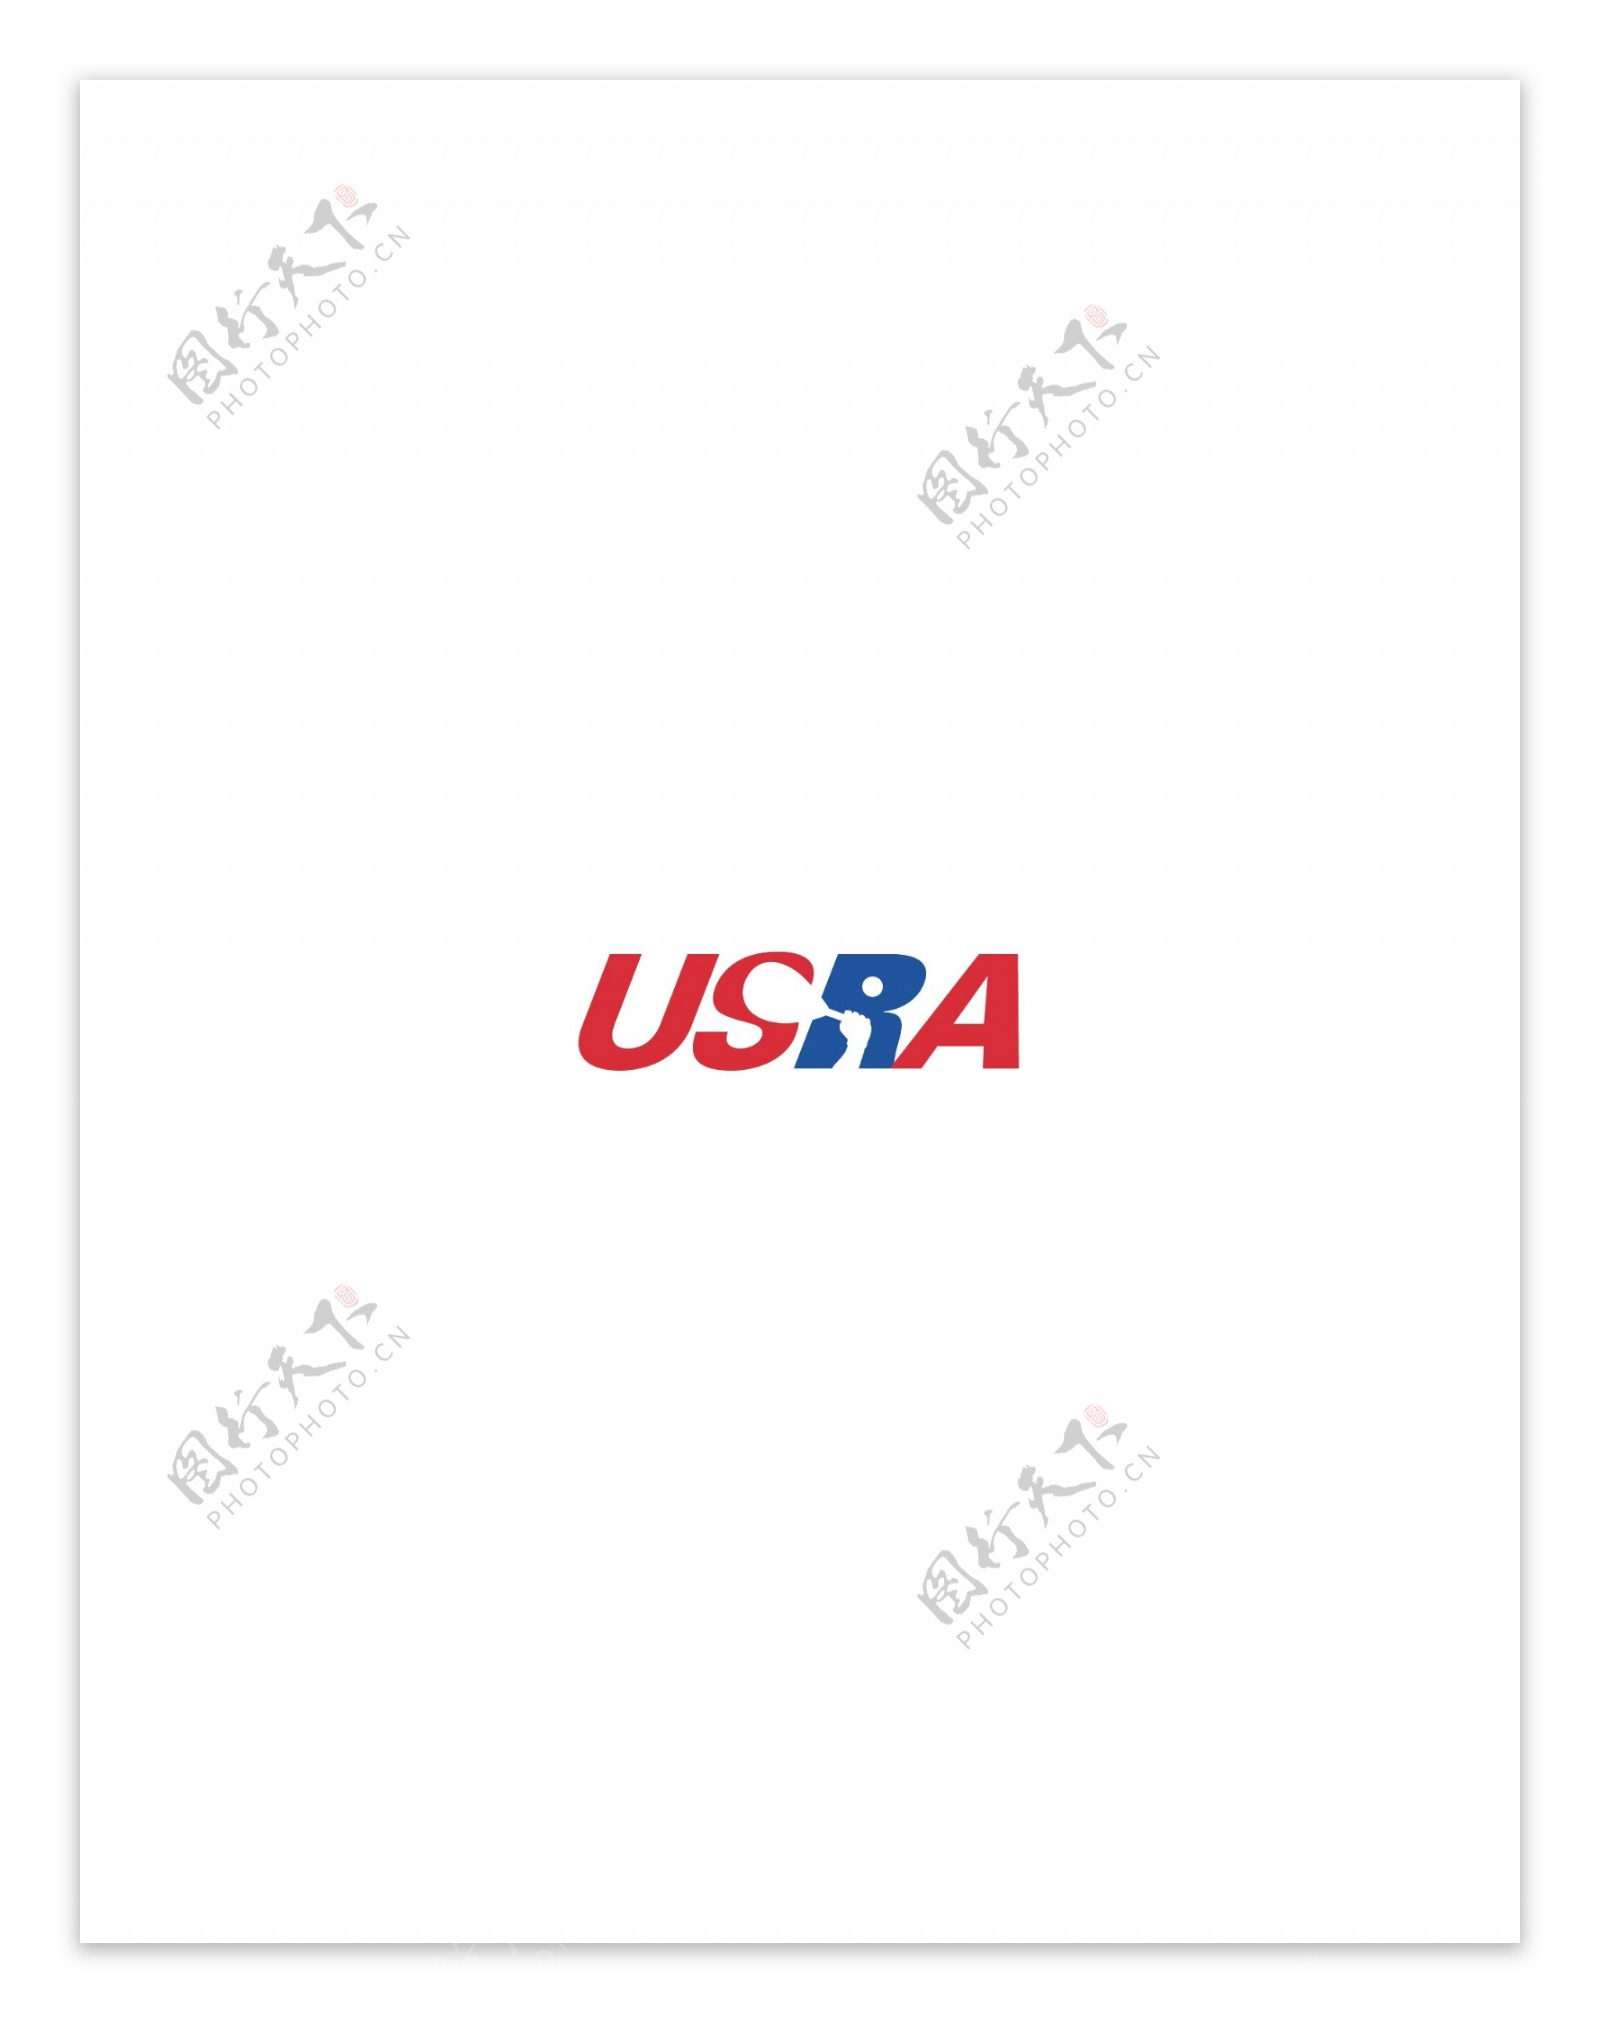 USRAlogo设计欣赏国外知名公司标志范例USRA下载标志设计欣赏